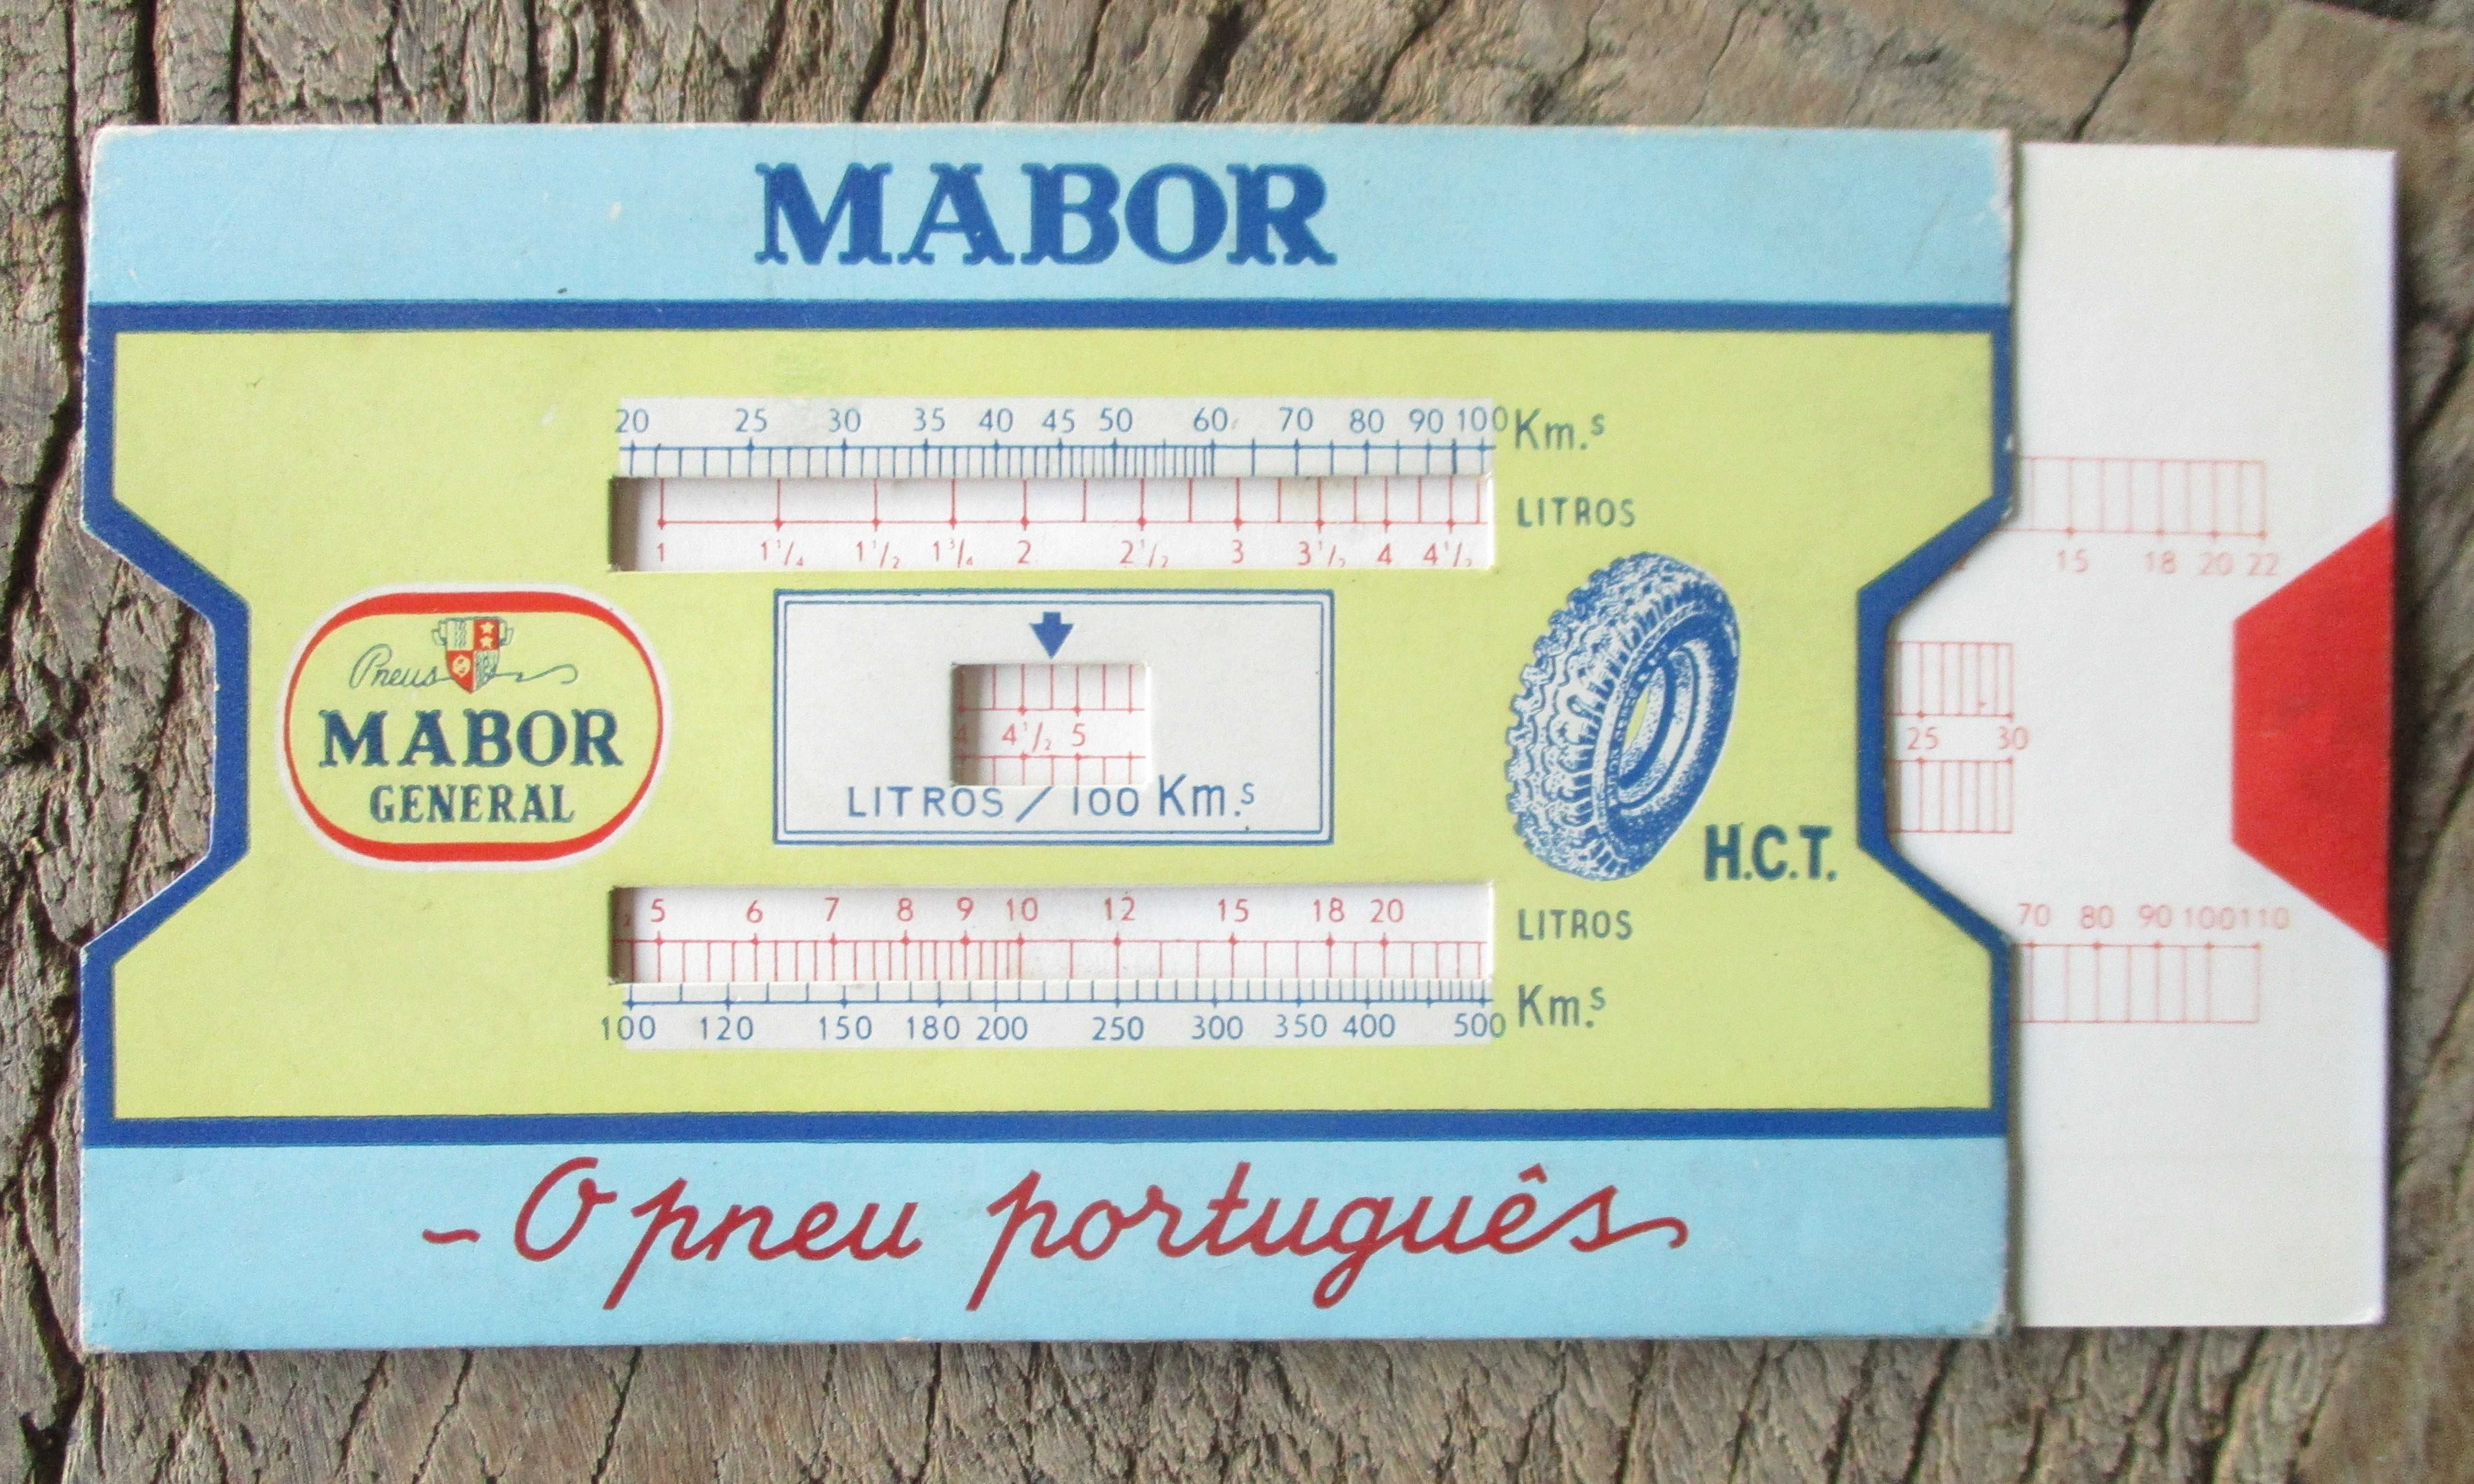 Mabor O Pneu Português Medidor Consumo de Combustível Litros/100 Km.s